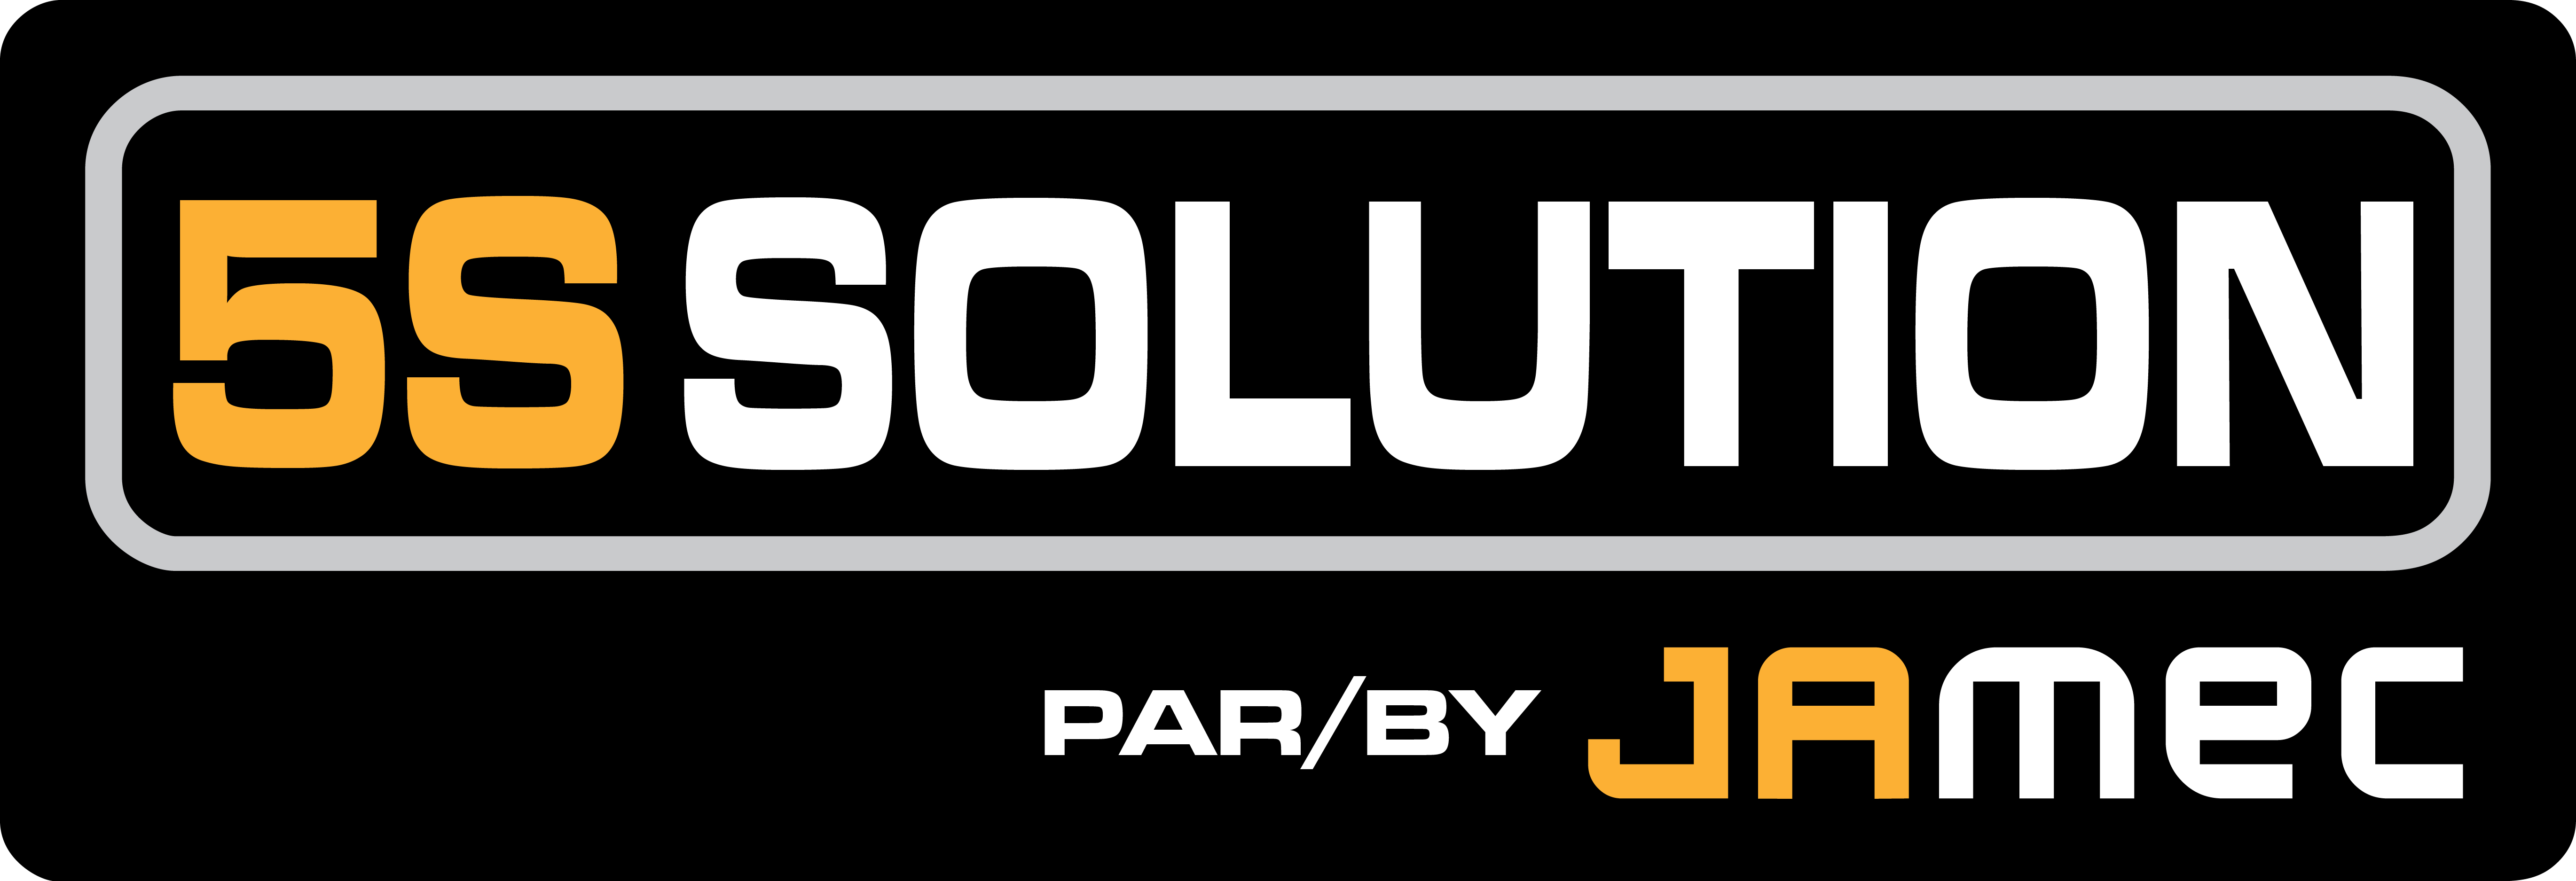 5S SOLUTION par/by JAMEC